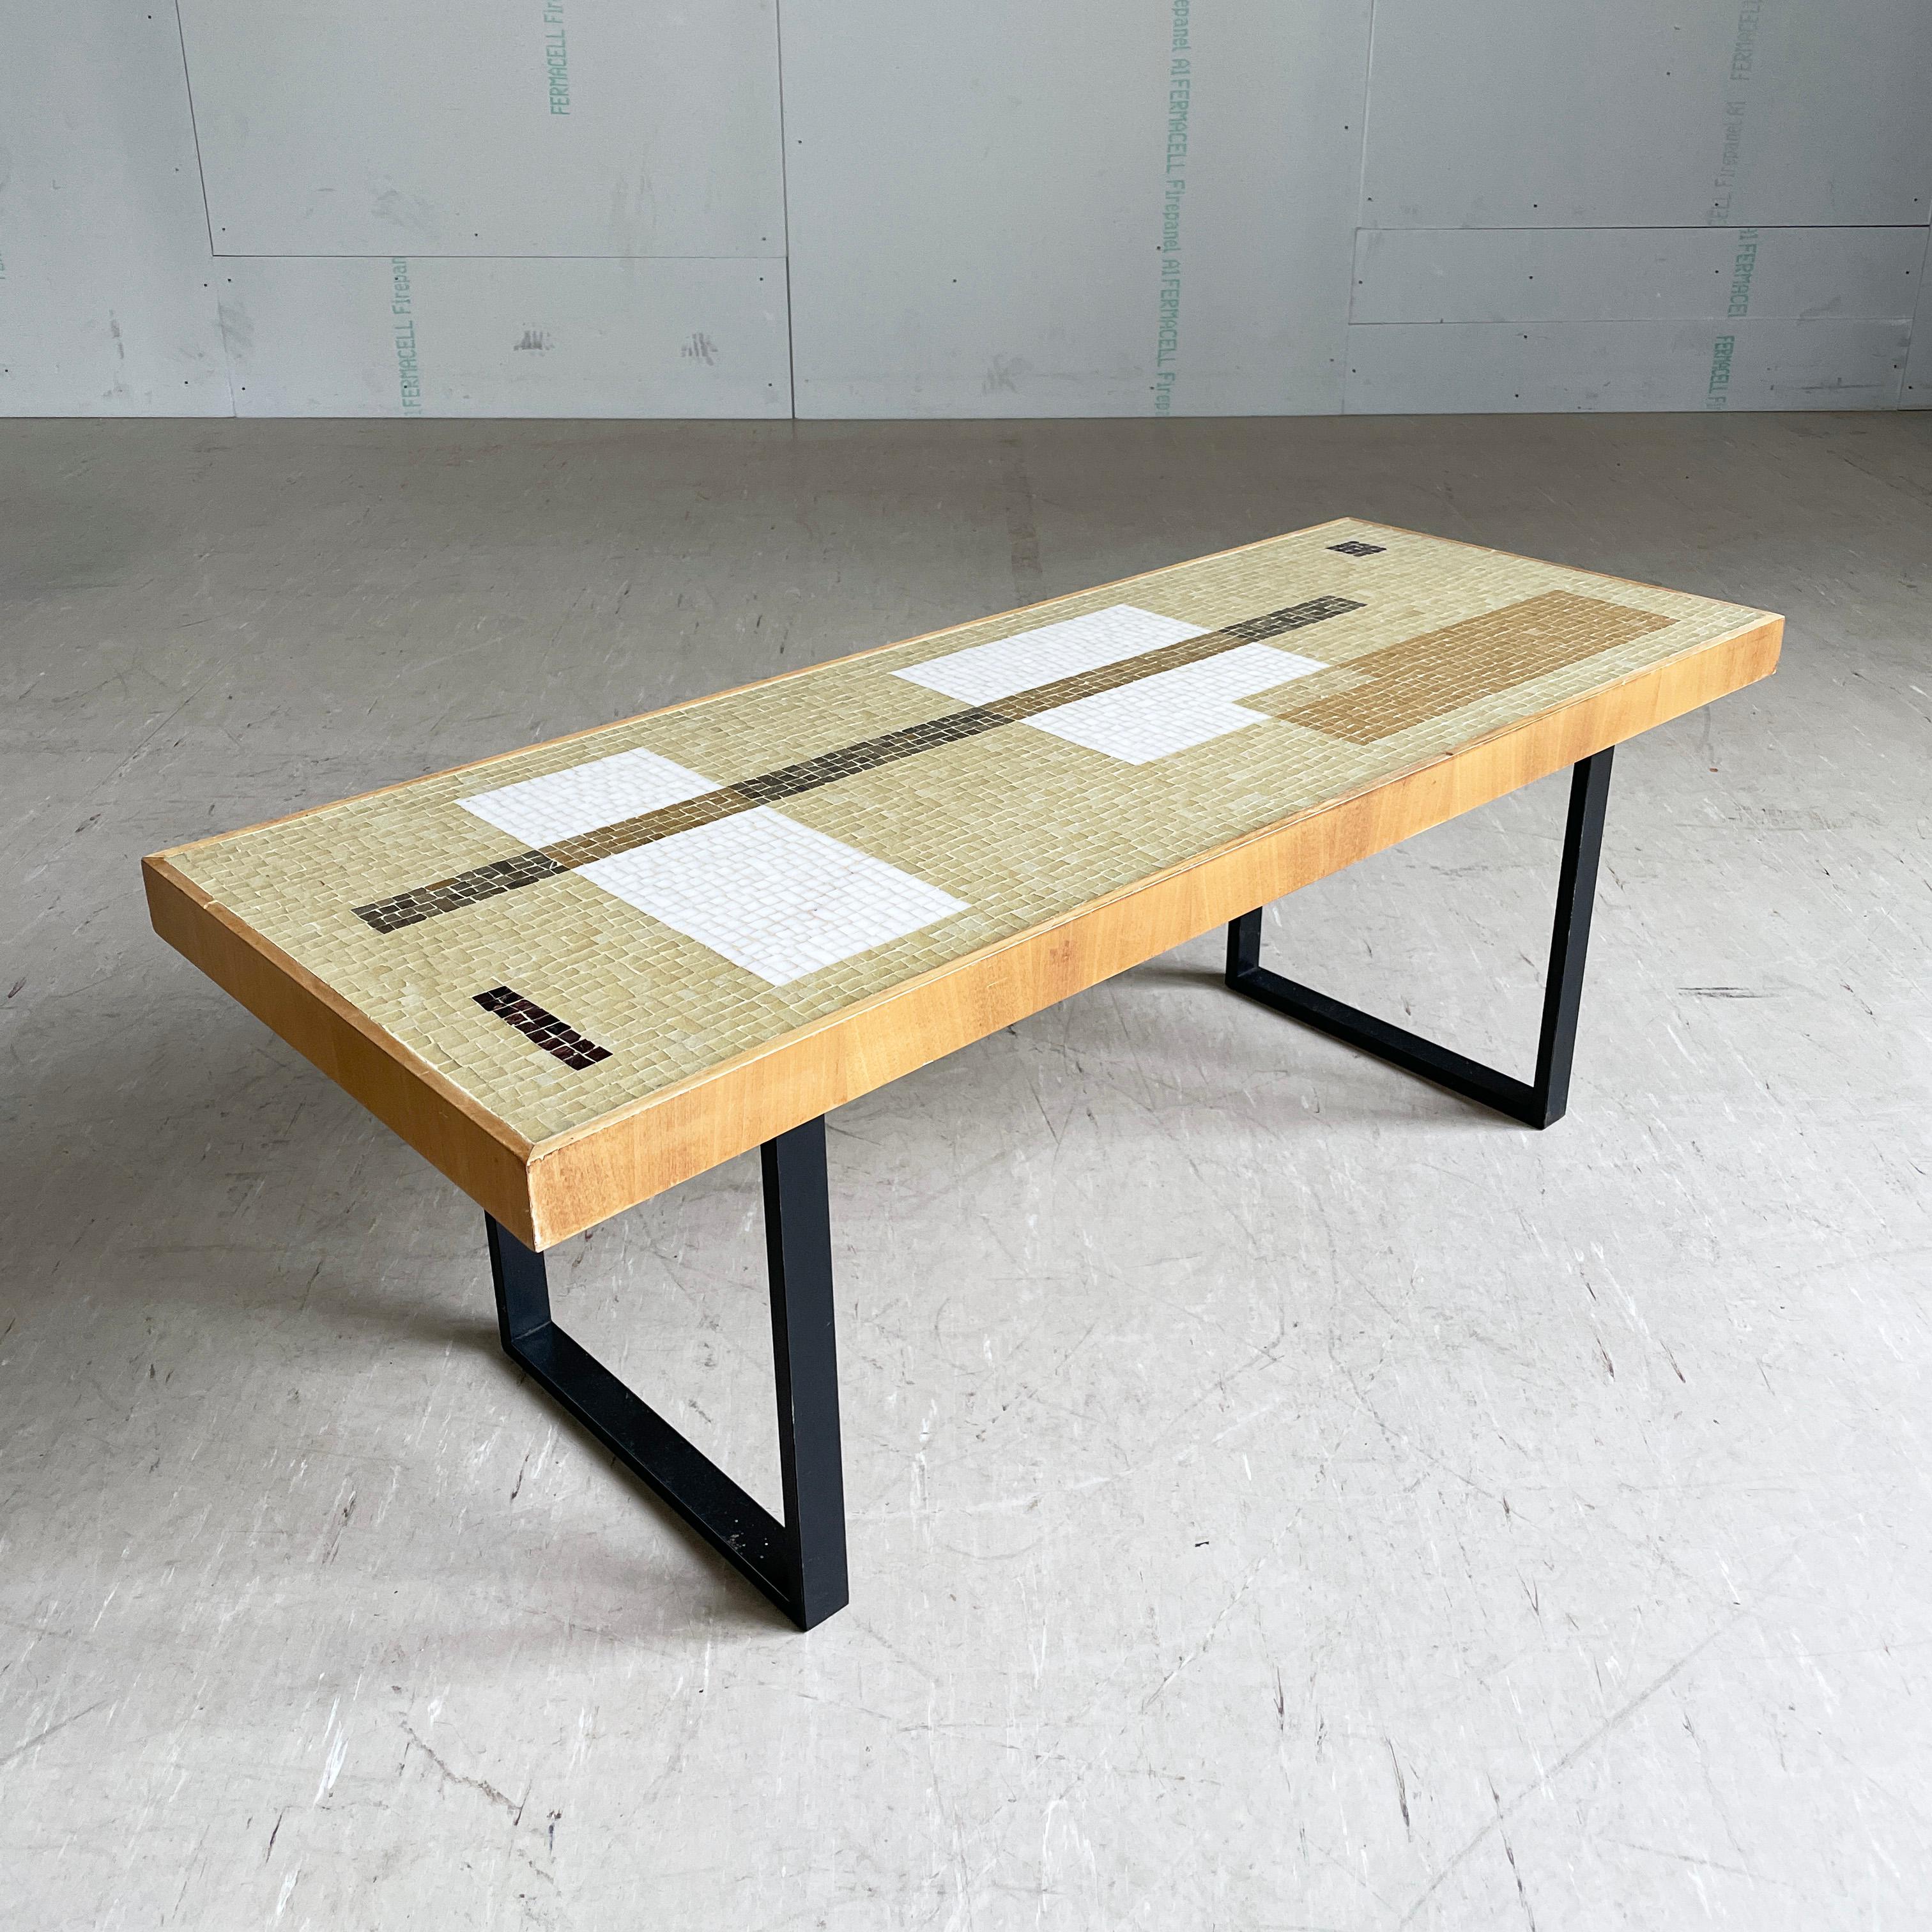 Table basse suisse du milieu du siècle avec plateau en mosaïque et base en bois noir dans le style minimaliste. On pense qu'il a été fabriqué à la fin des années 1950 - début des années 1960. Le design des tables en mosaïque est réputé être l'œuvre